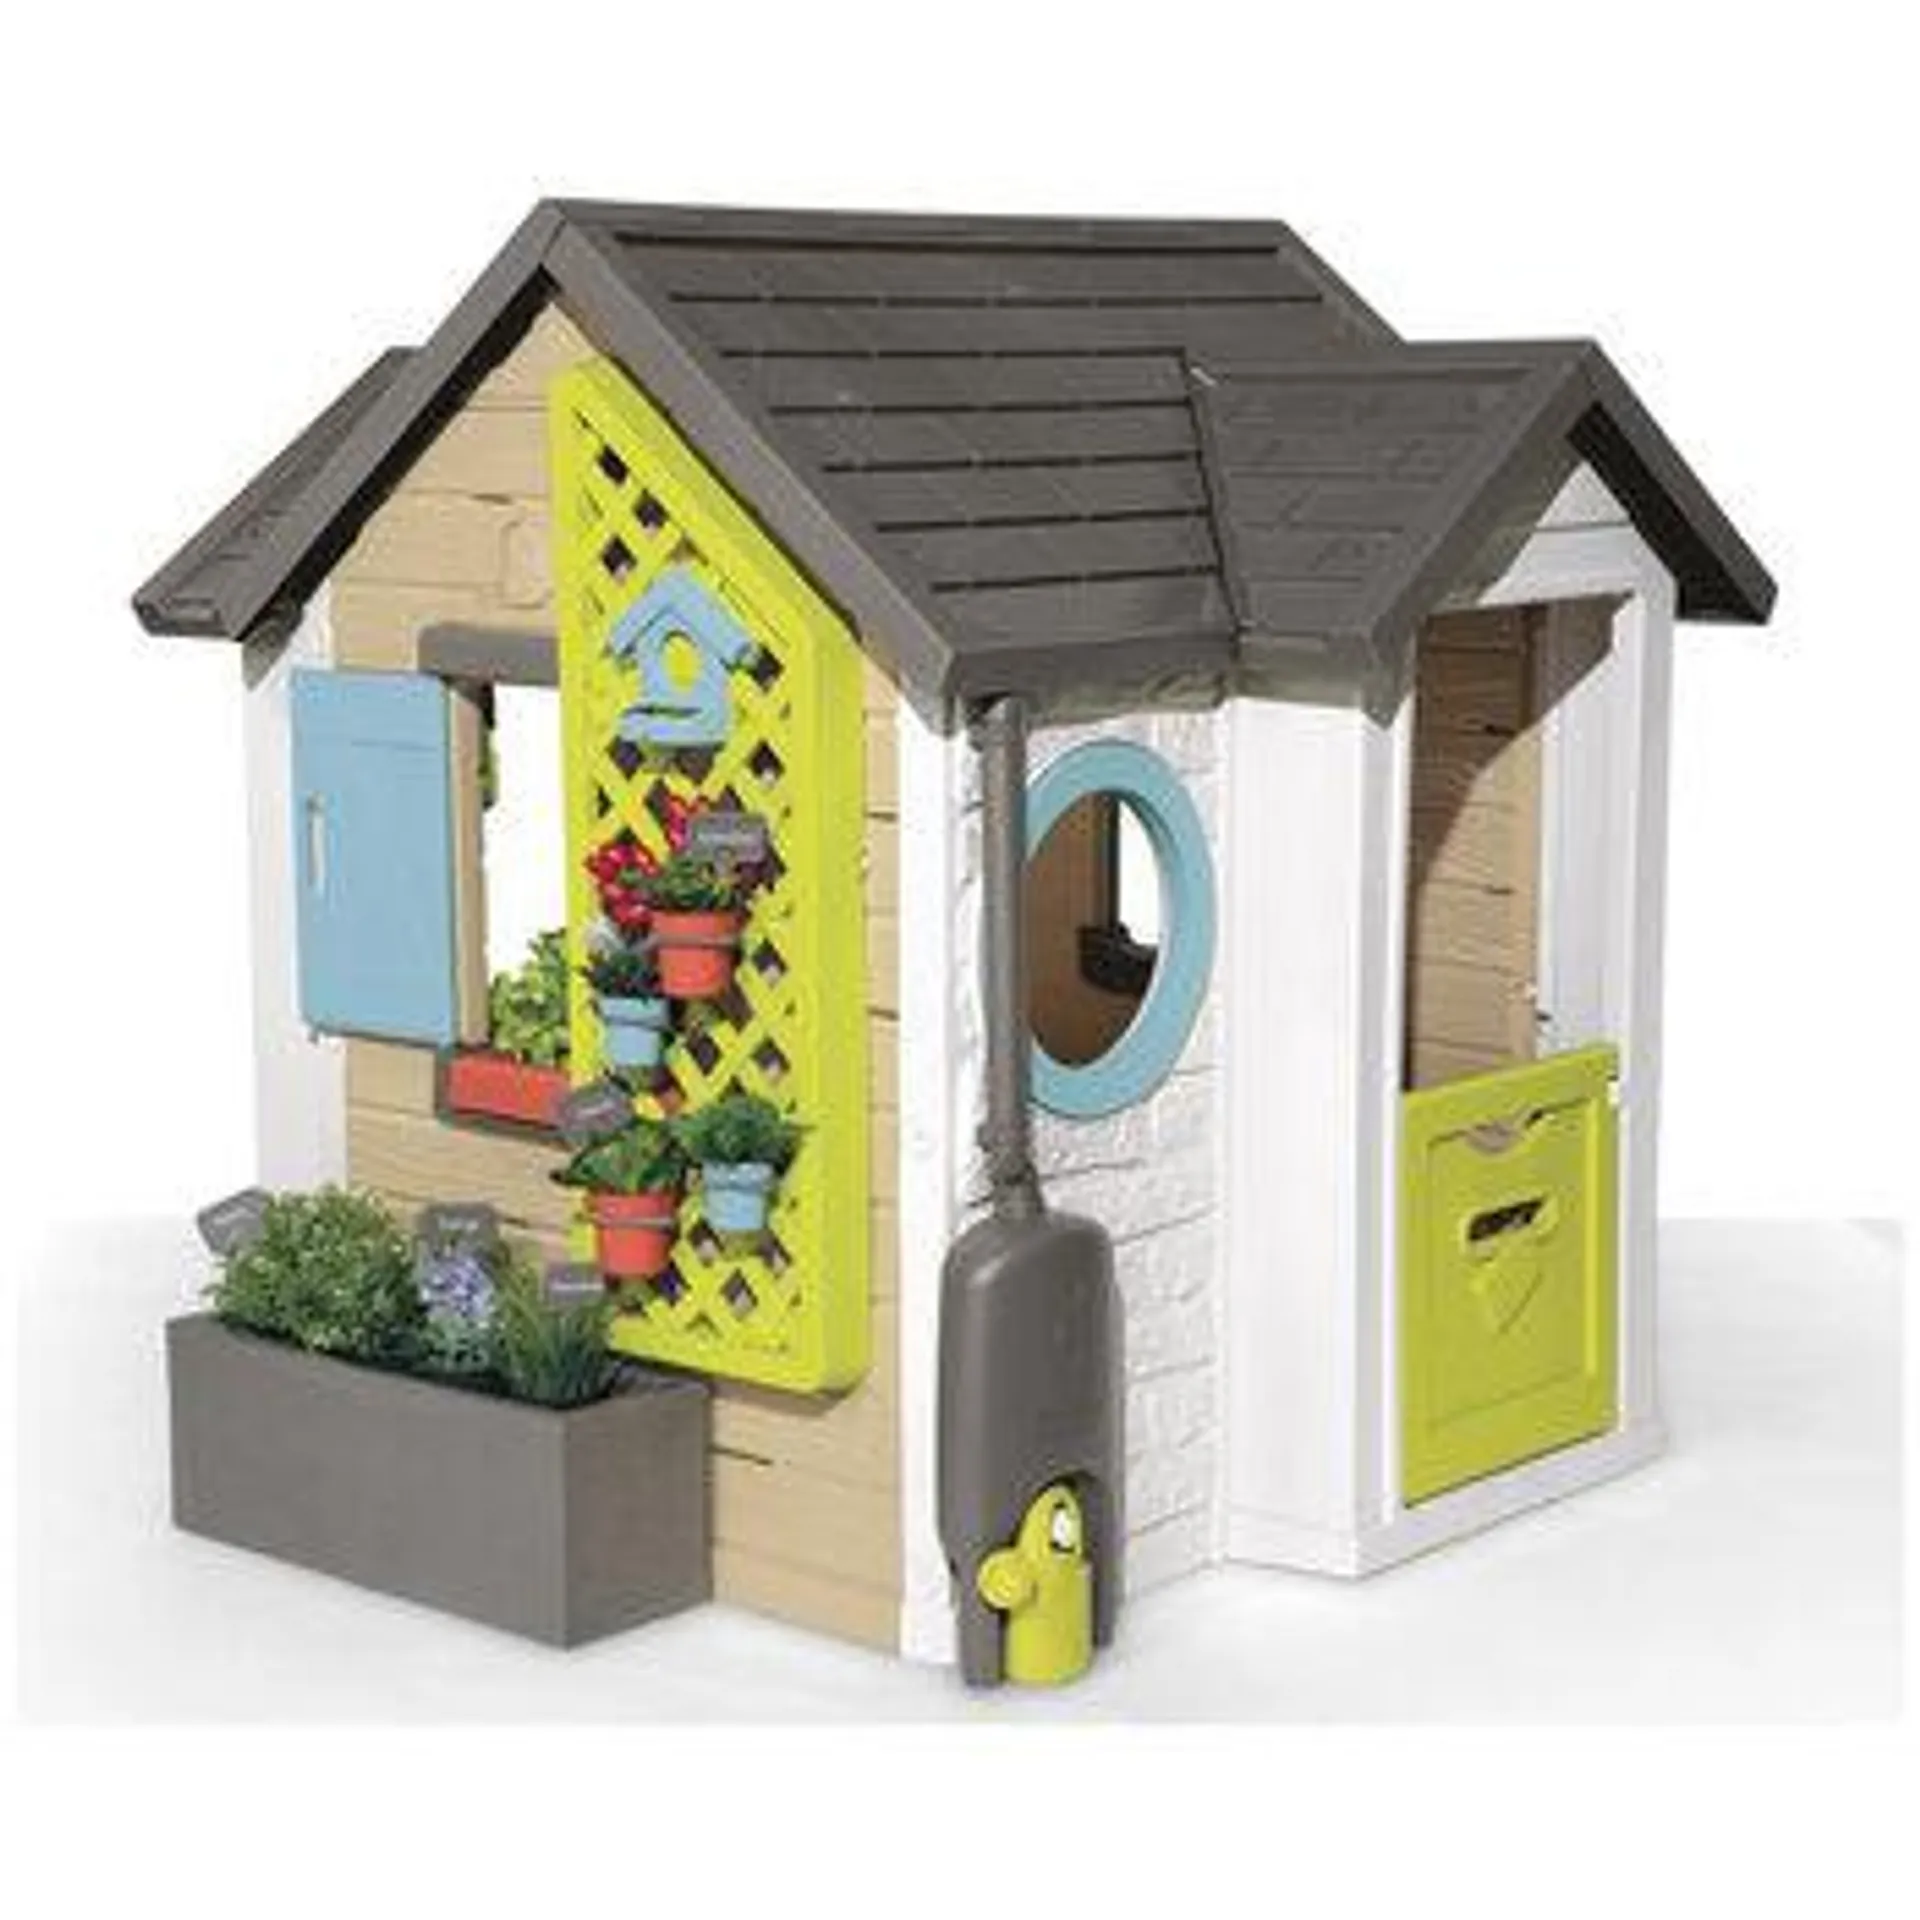 Smoby Garden Play House